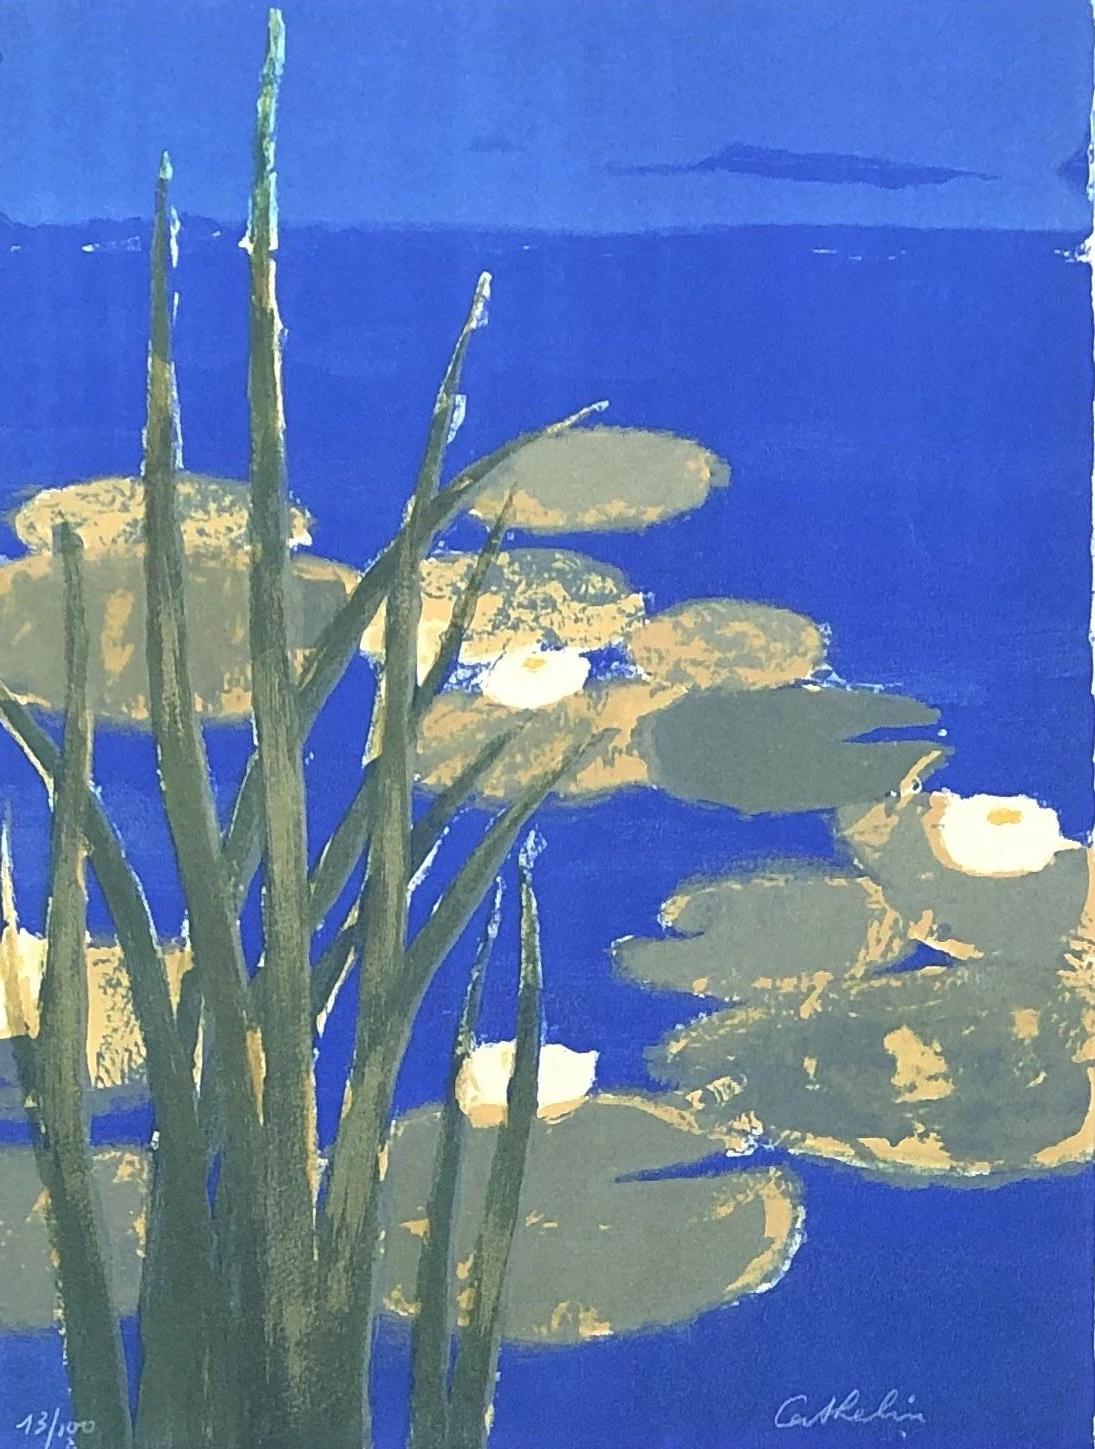 Bernard Cathelin Still-Life Print - Water Lilies - Original lithograph handsigned - 100 copies